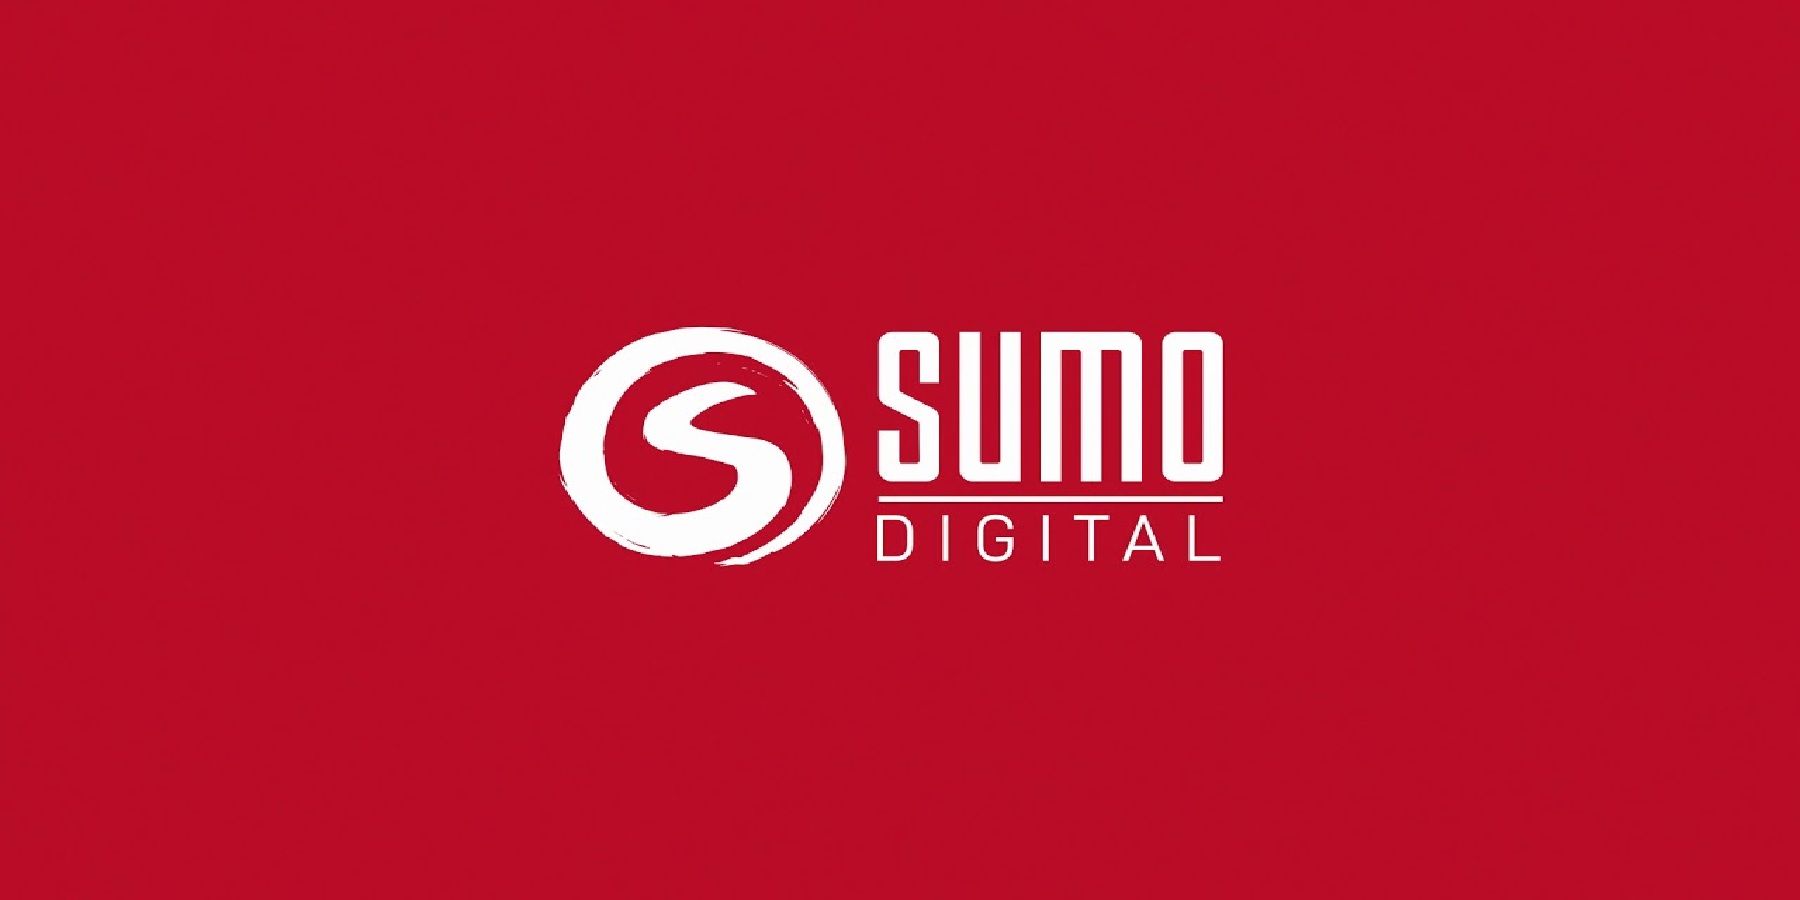 сумо-новая игра